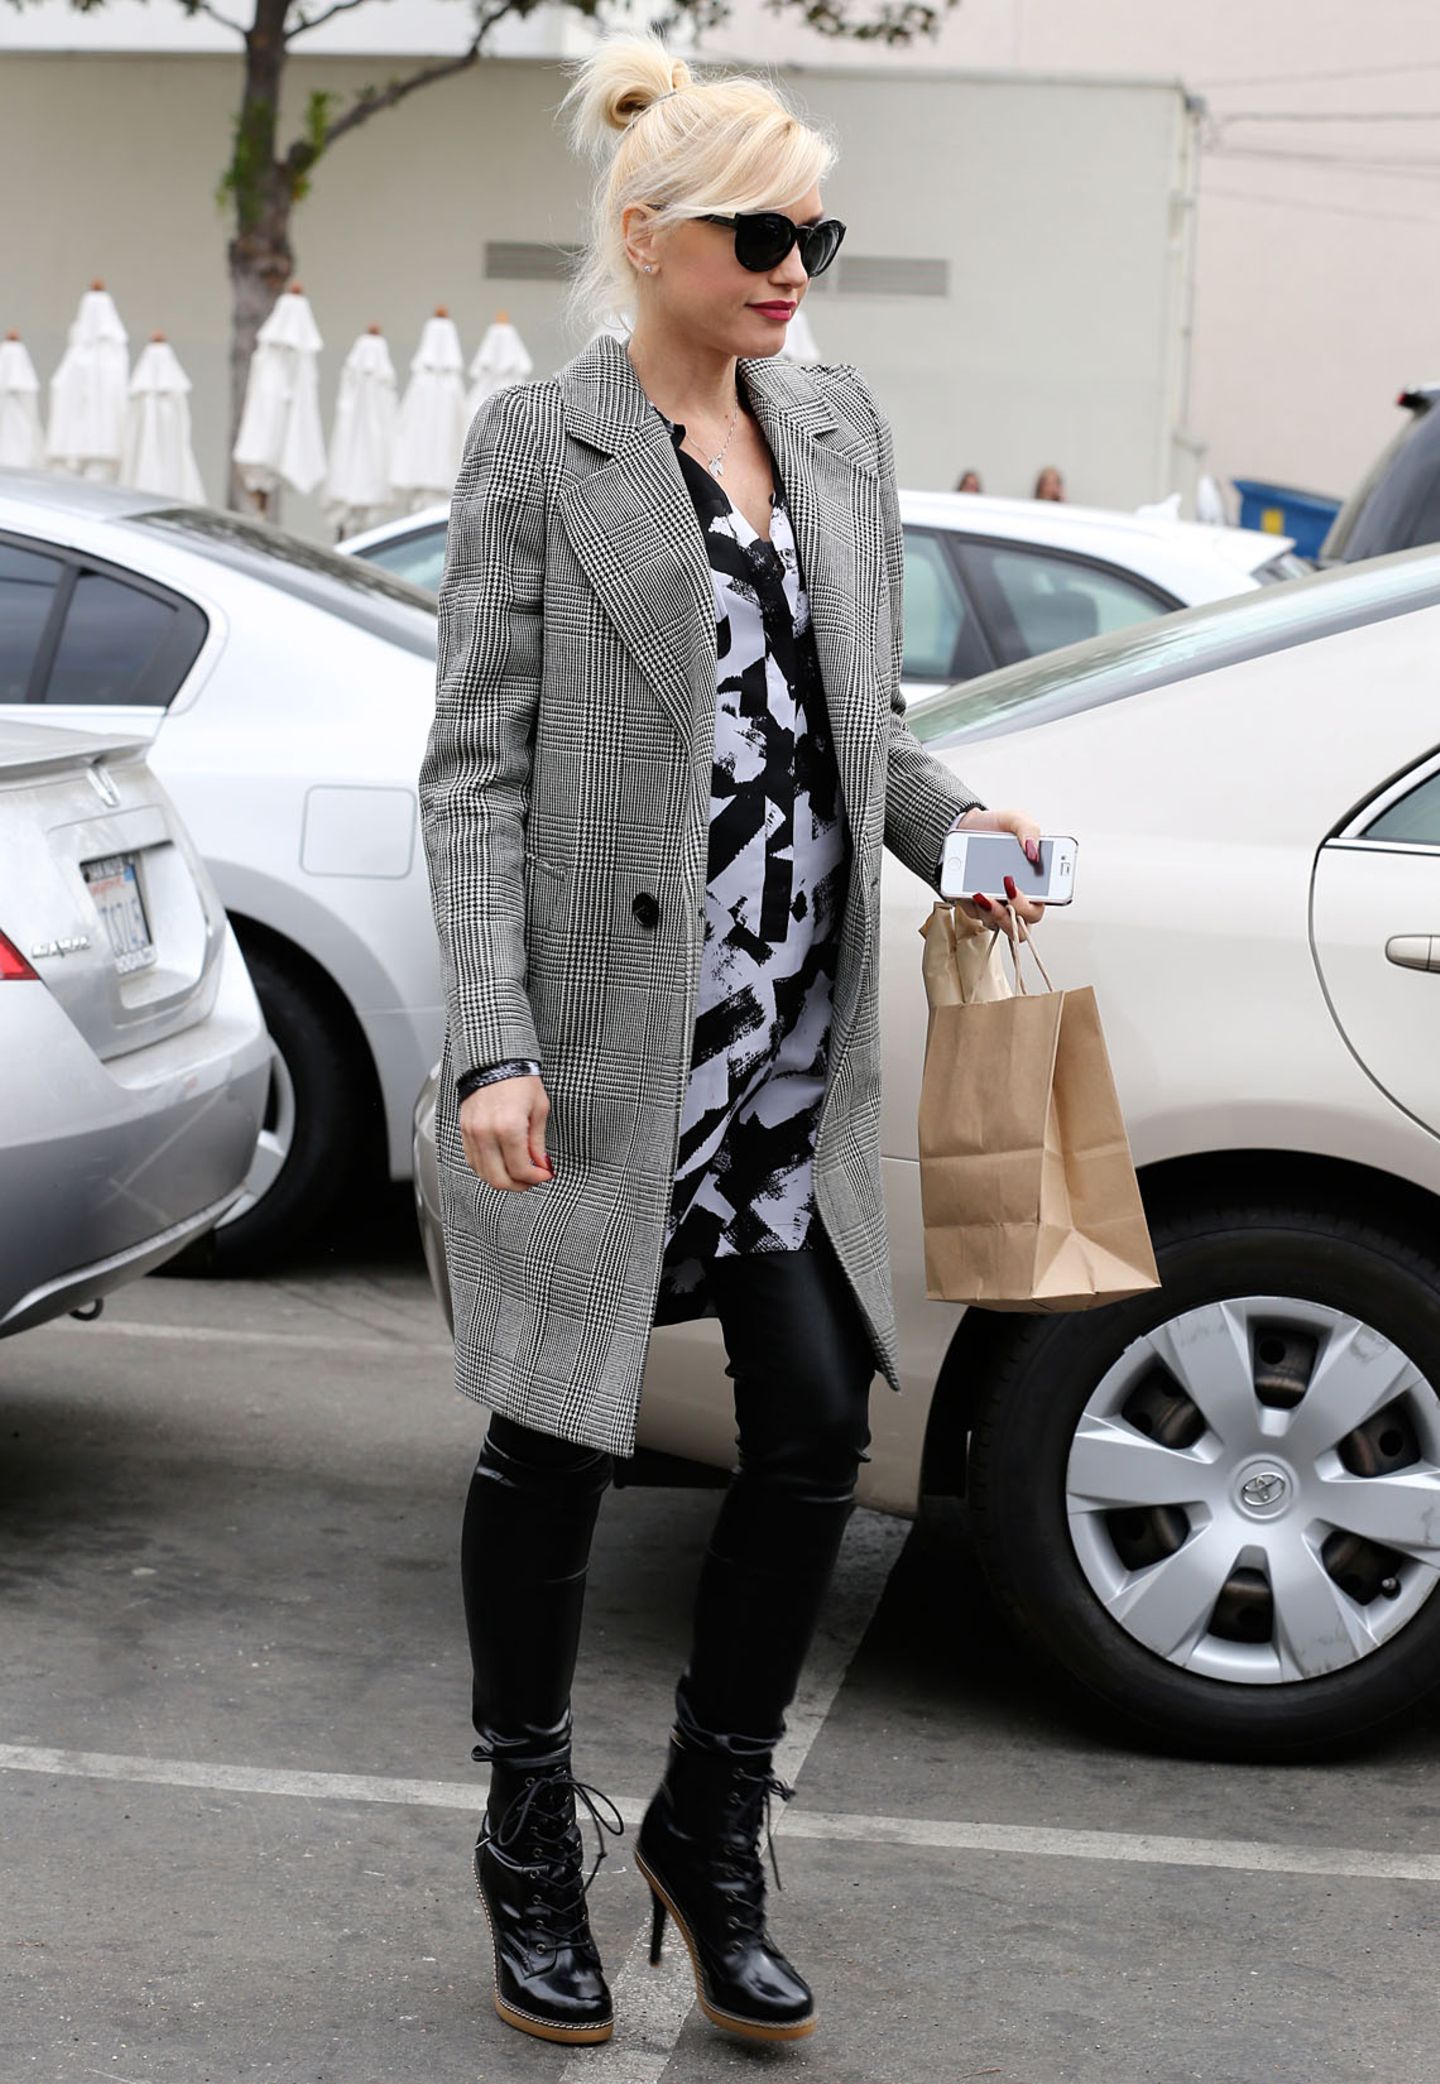 Mustermixe funktionieren bei Gwen Stefani immer gut: Den karierten Mantel kombiniert sie mit einem schwarz-weißen, langen Hemd.